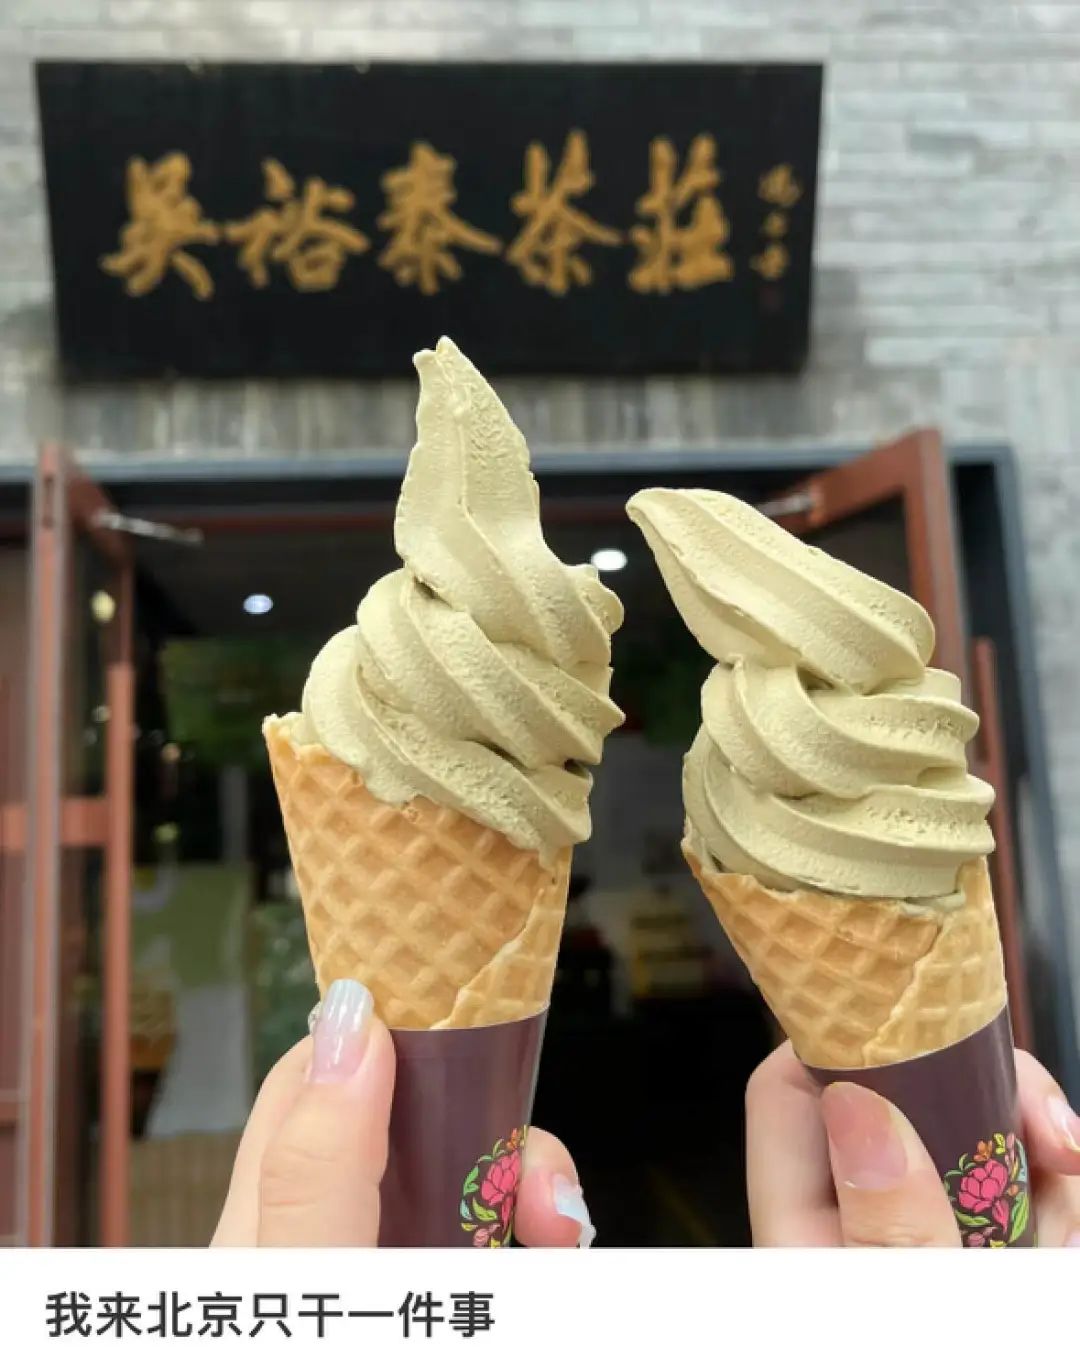 来北京就为吃口茶味冰淇淋,这家老字号咋让买不起茶叶的打工人疯狂